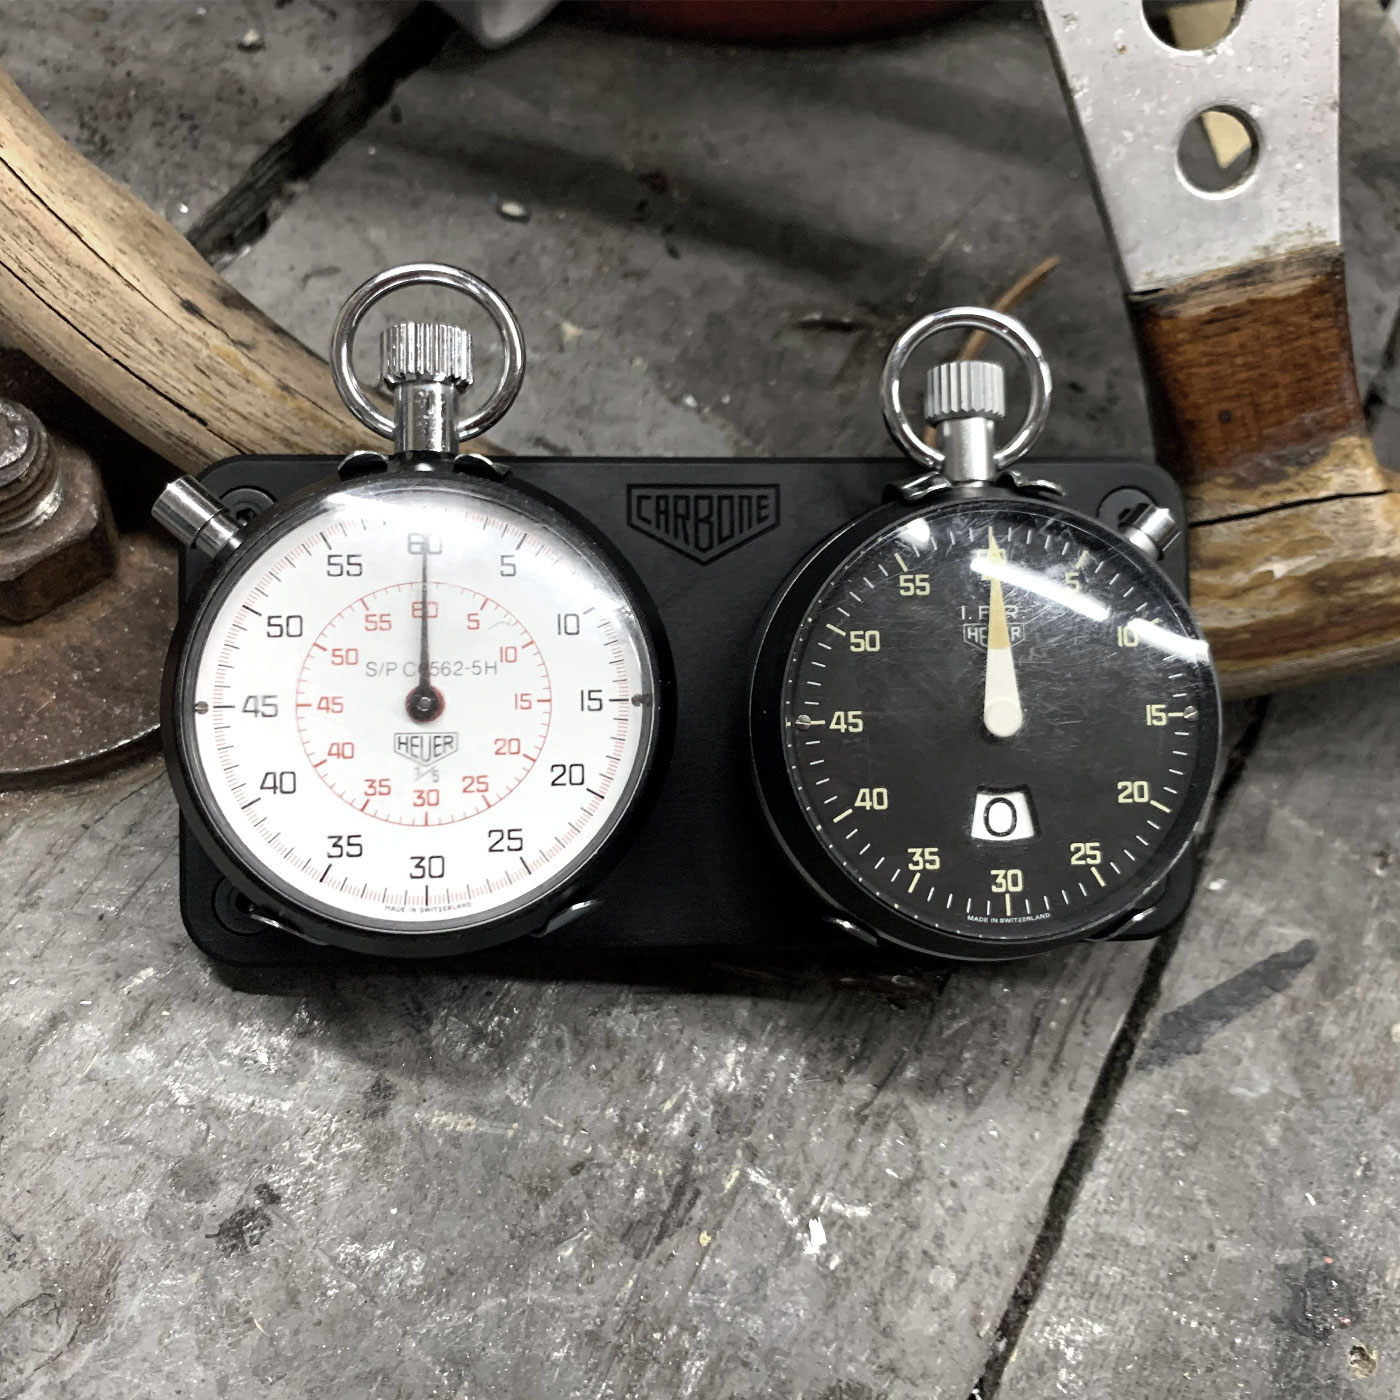 Vintage Heuer IFR Ref.542.240 53mm stopwatch  #1